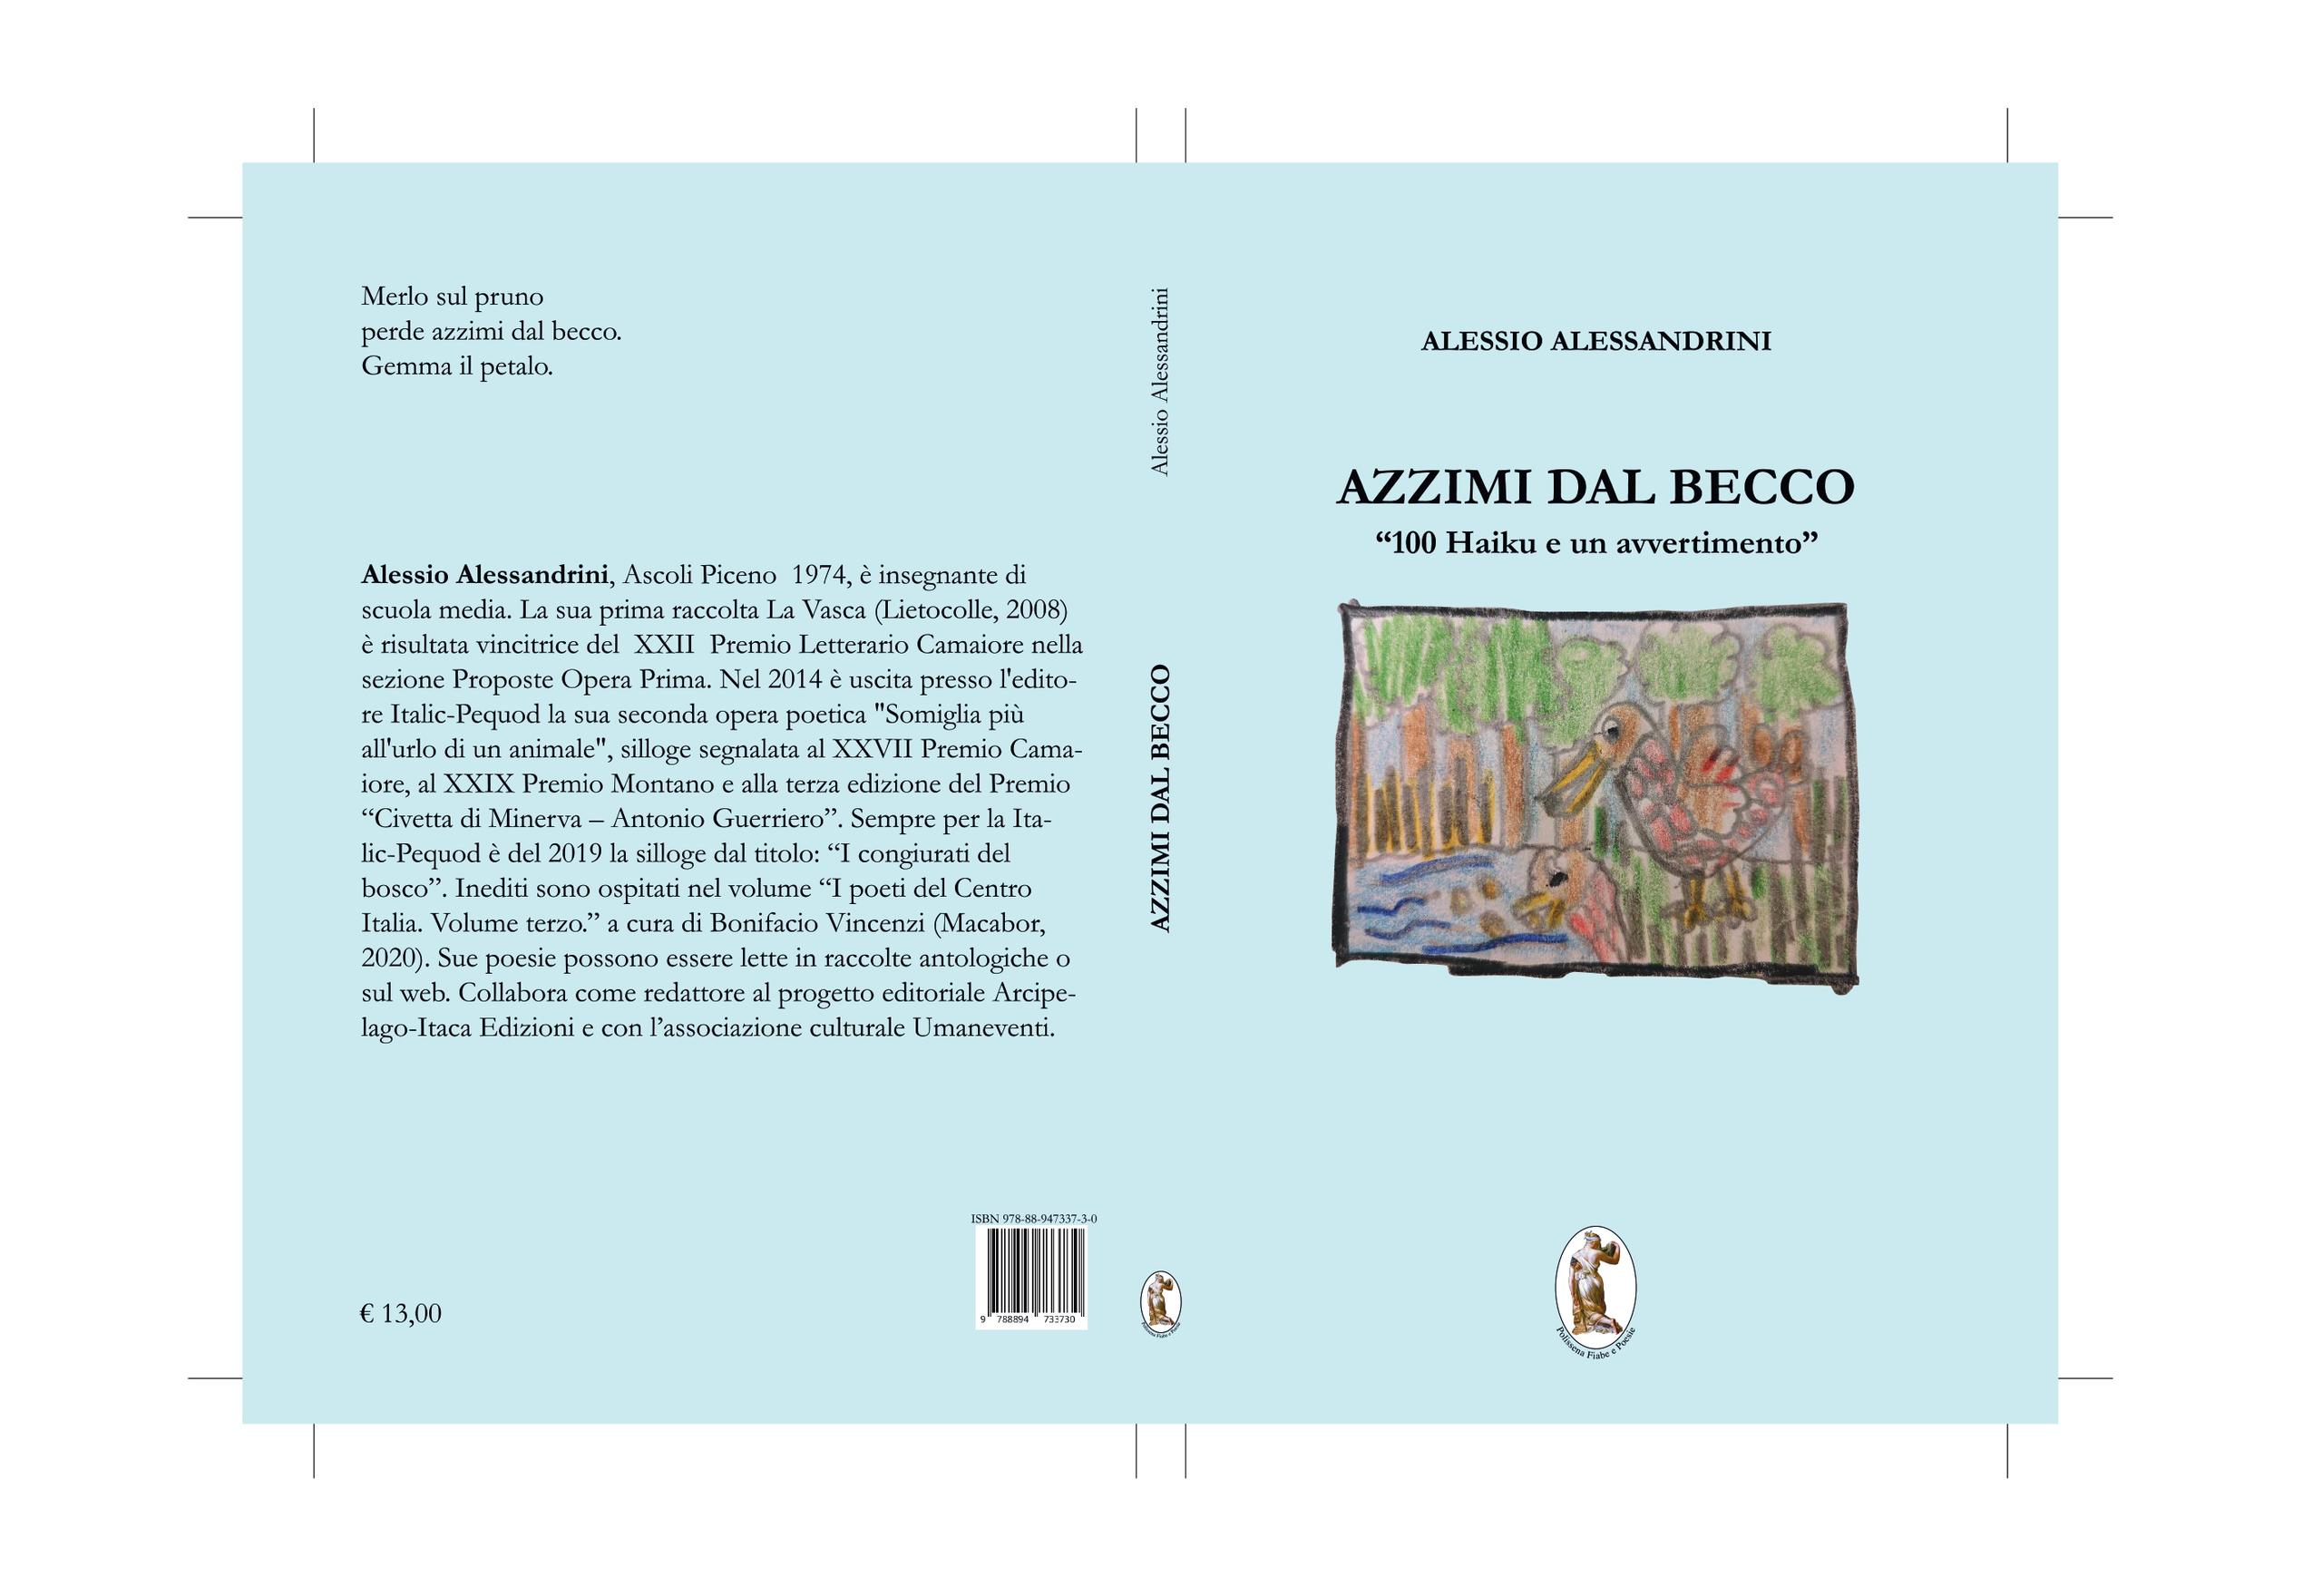 "Azzimi dal becco- 100 Haiku e un avvertimento" di Alessio Alessandrini - ESAURITO